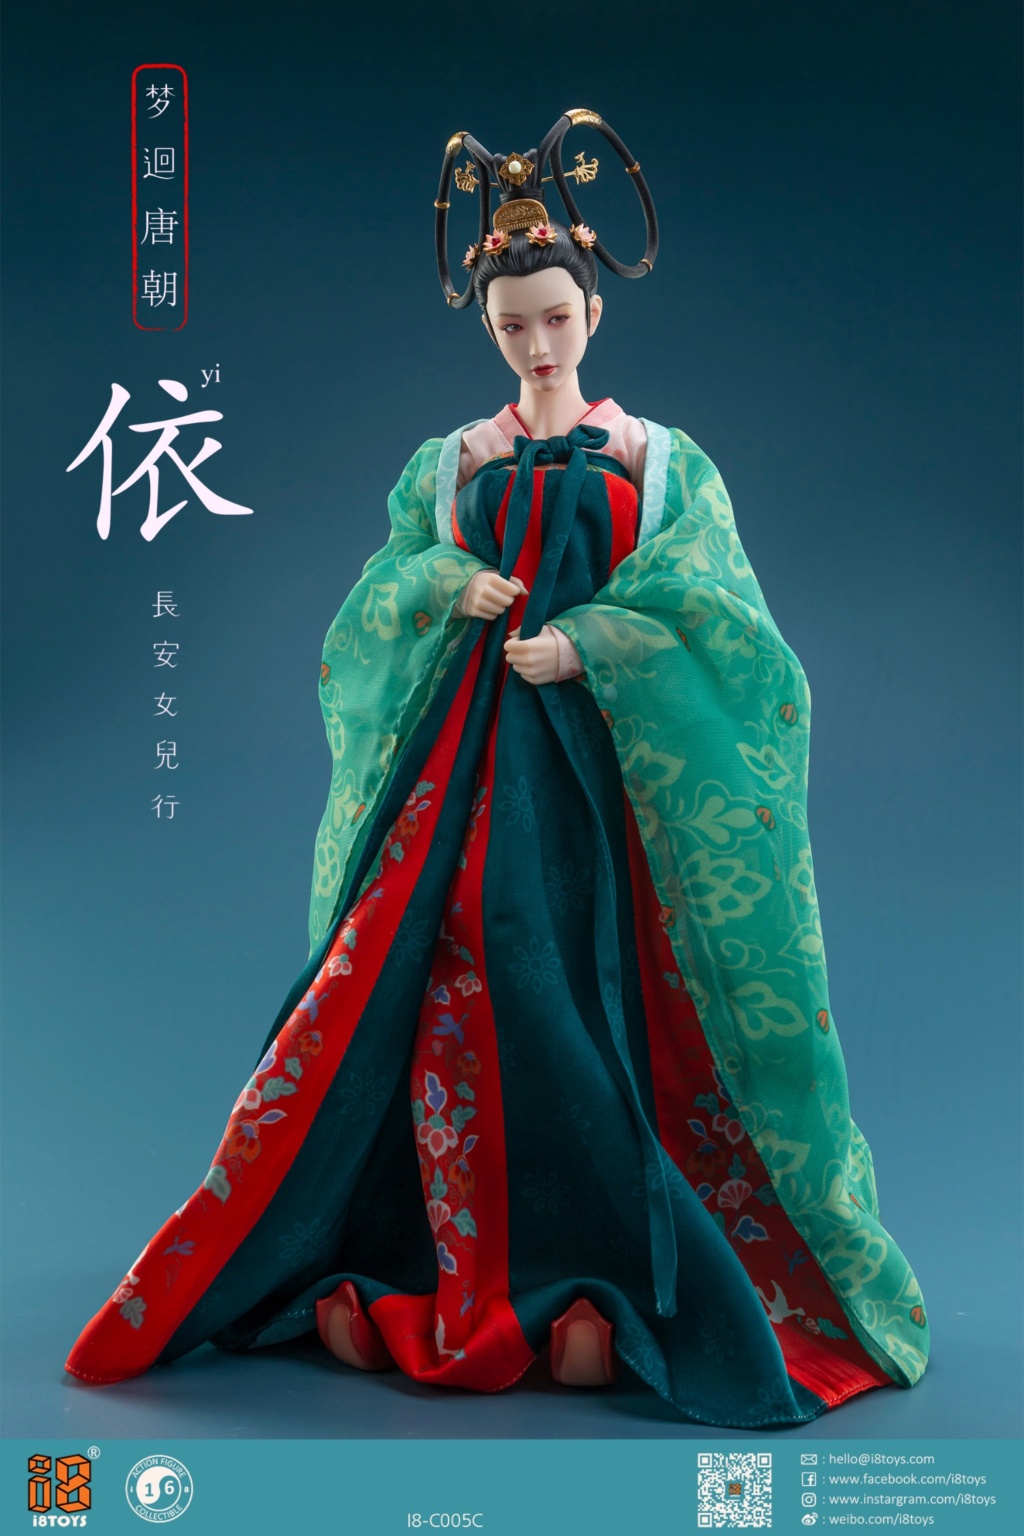 Female - NEW PRODUCT: I8Toys: I8-C005 1/6 Scale Han Chinese Clothing sets 11450610